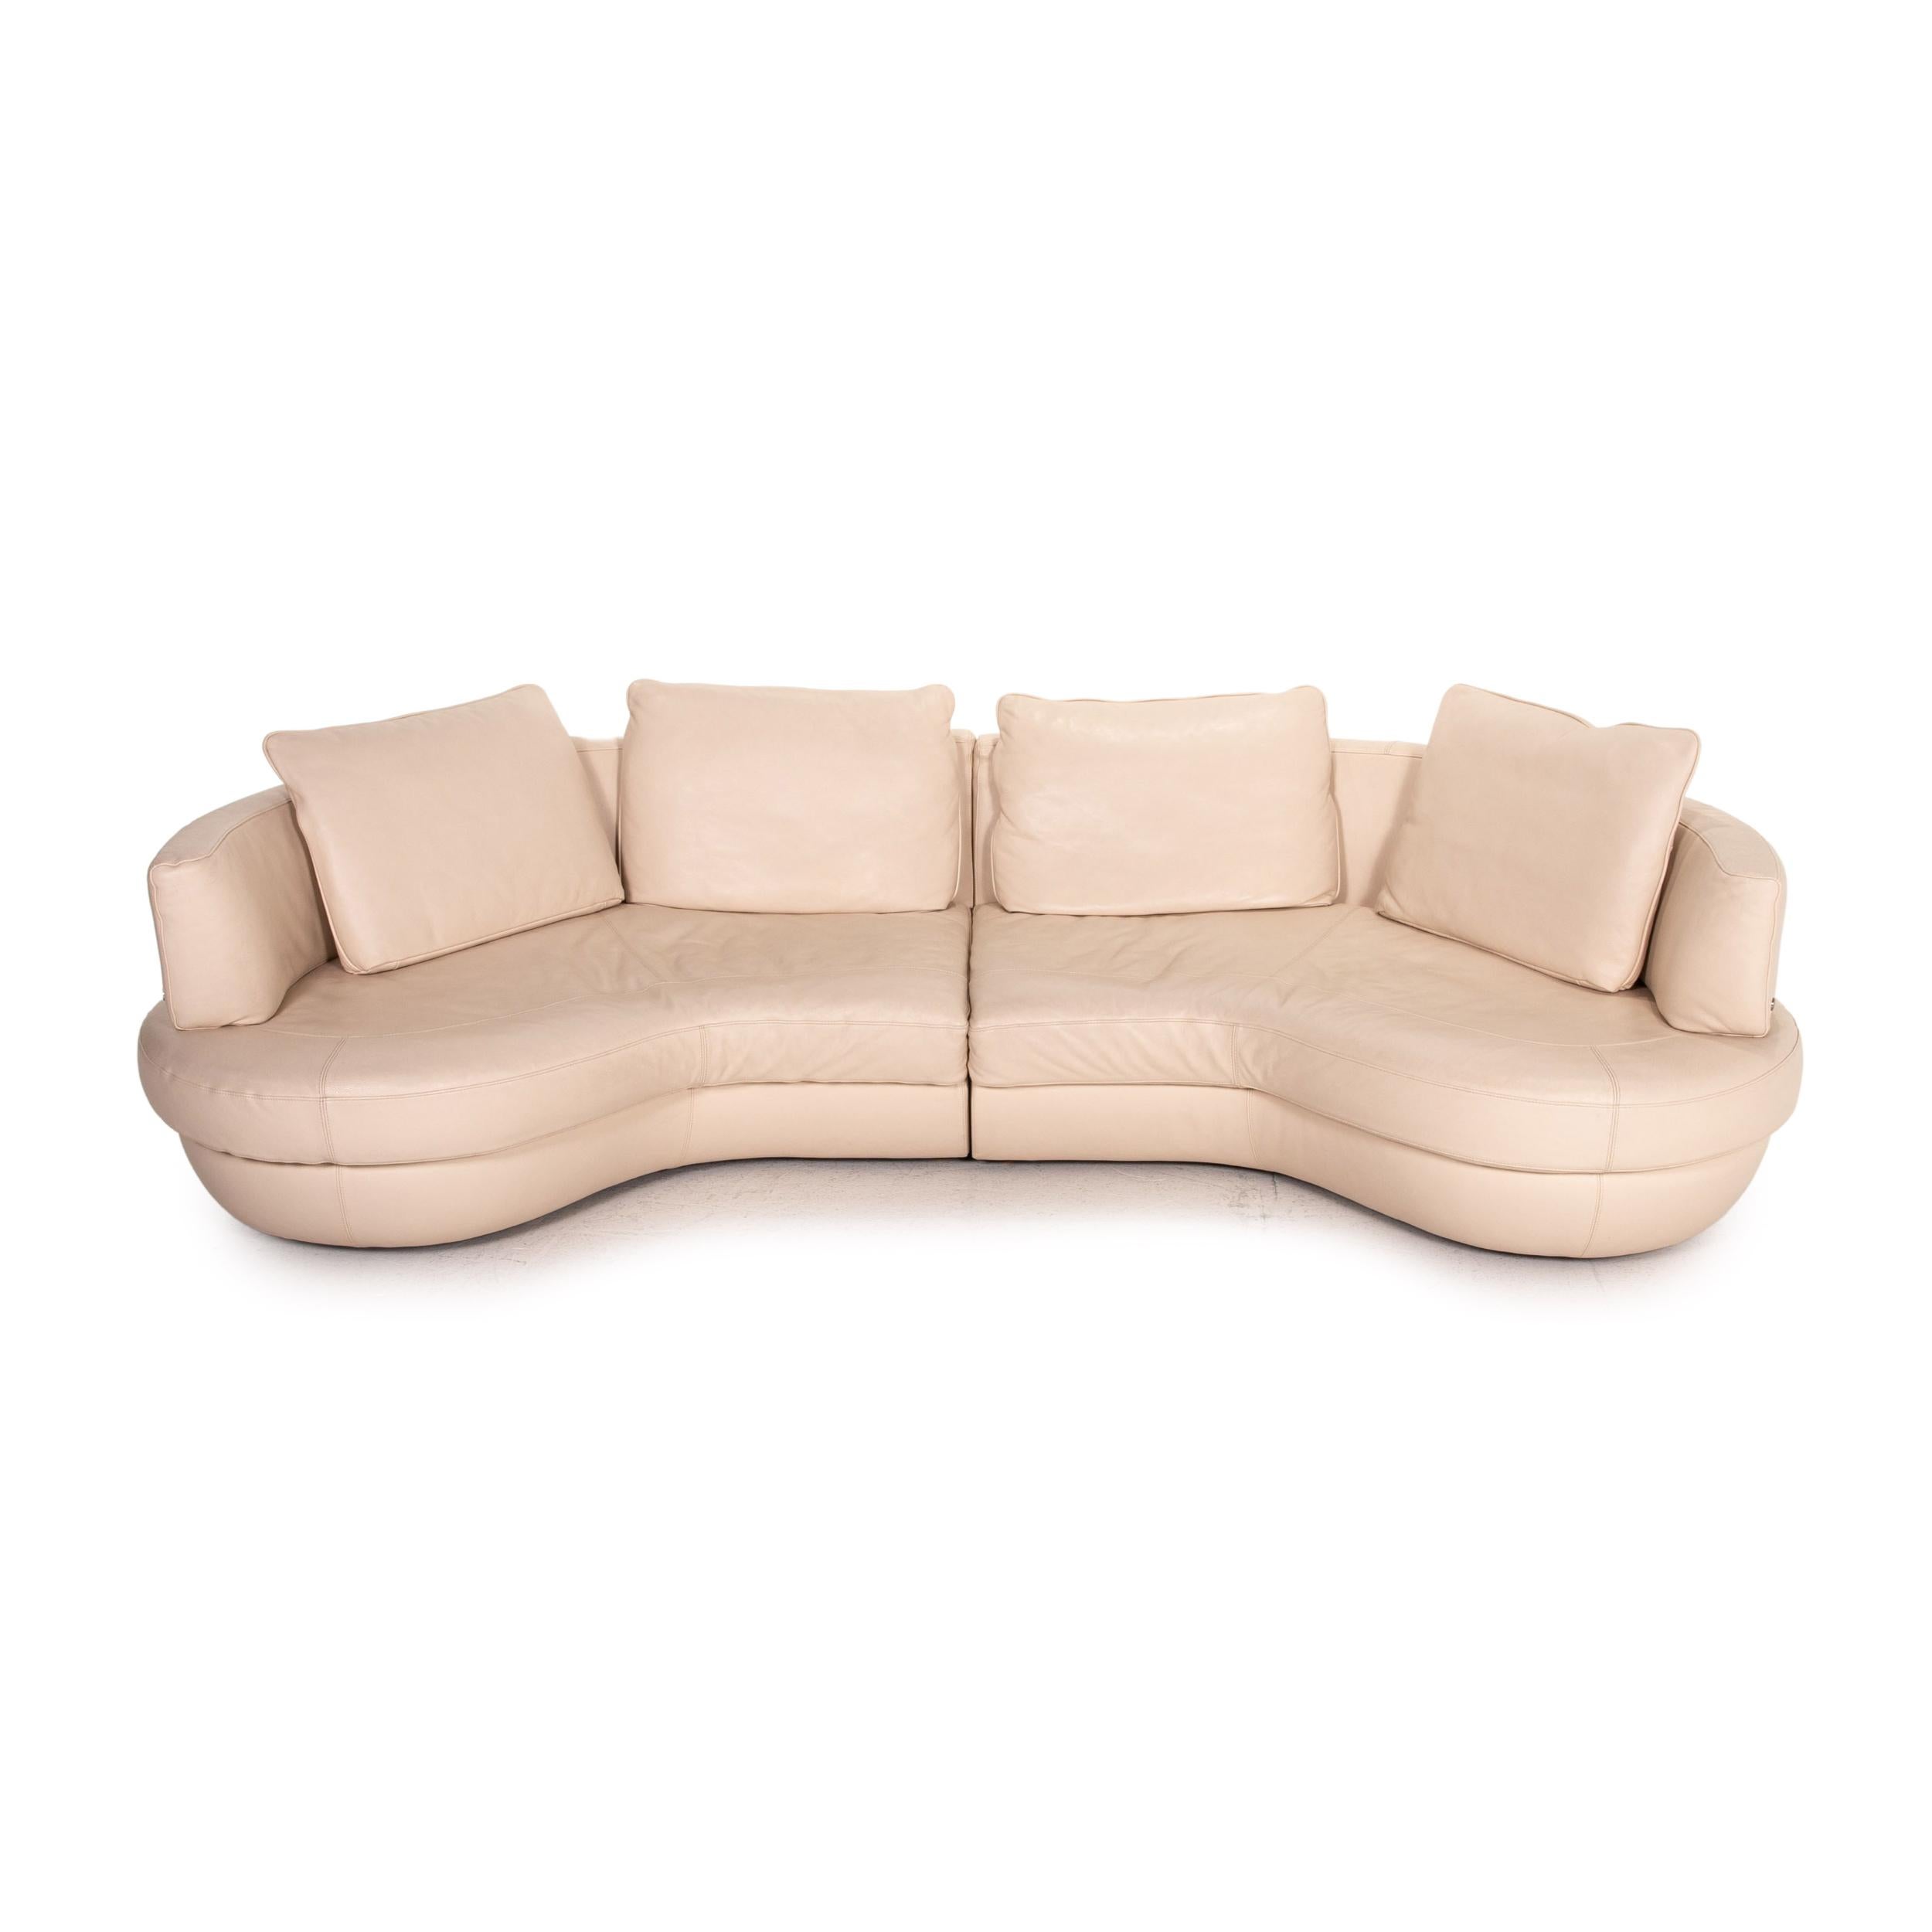 Contemporary Natuzzi Leather Corner Sofa Cream Function Sofa Couch For Sale